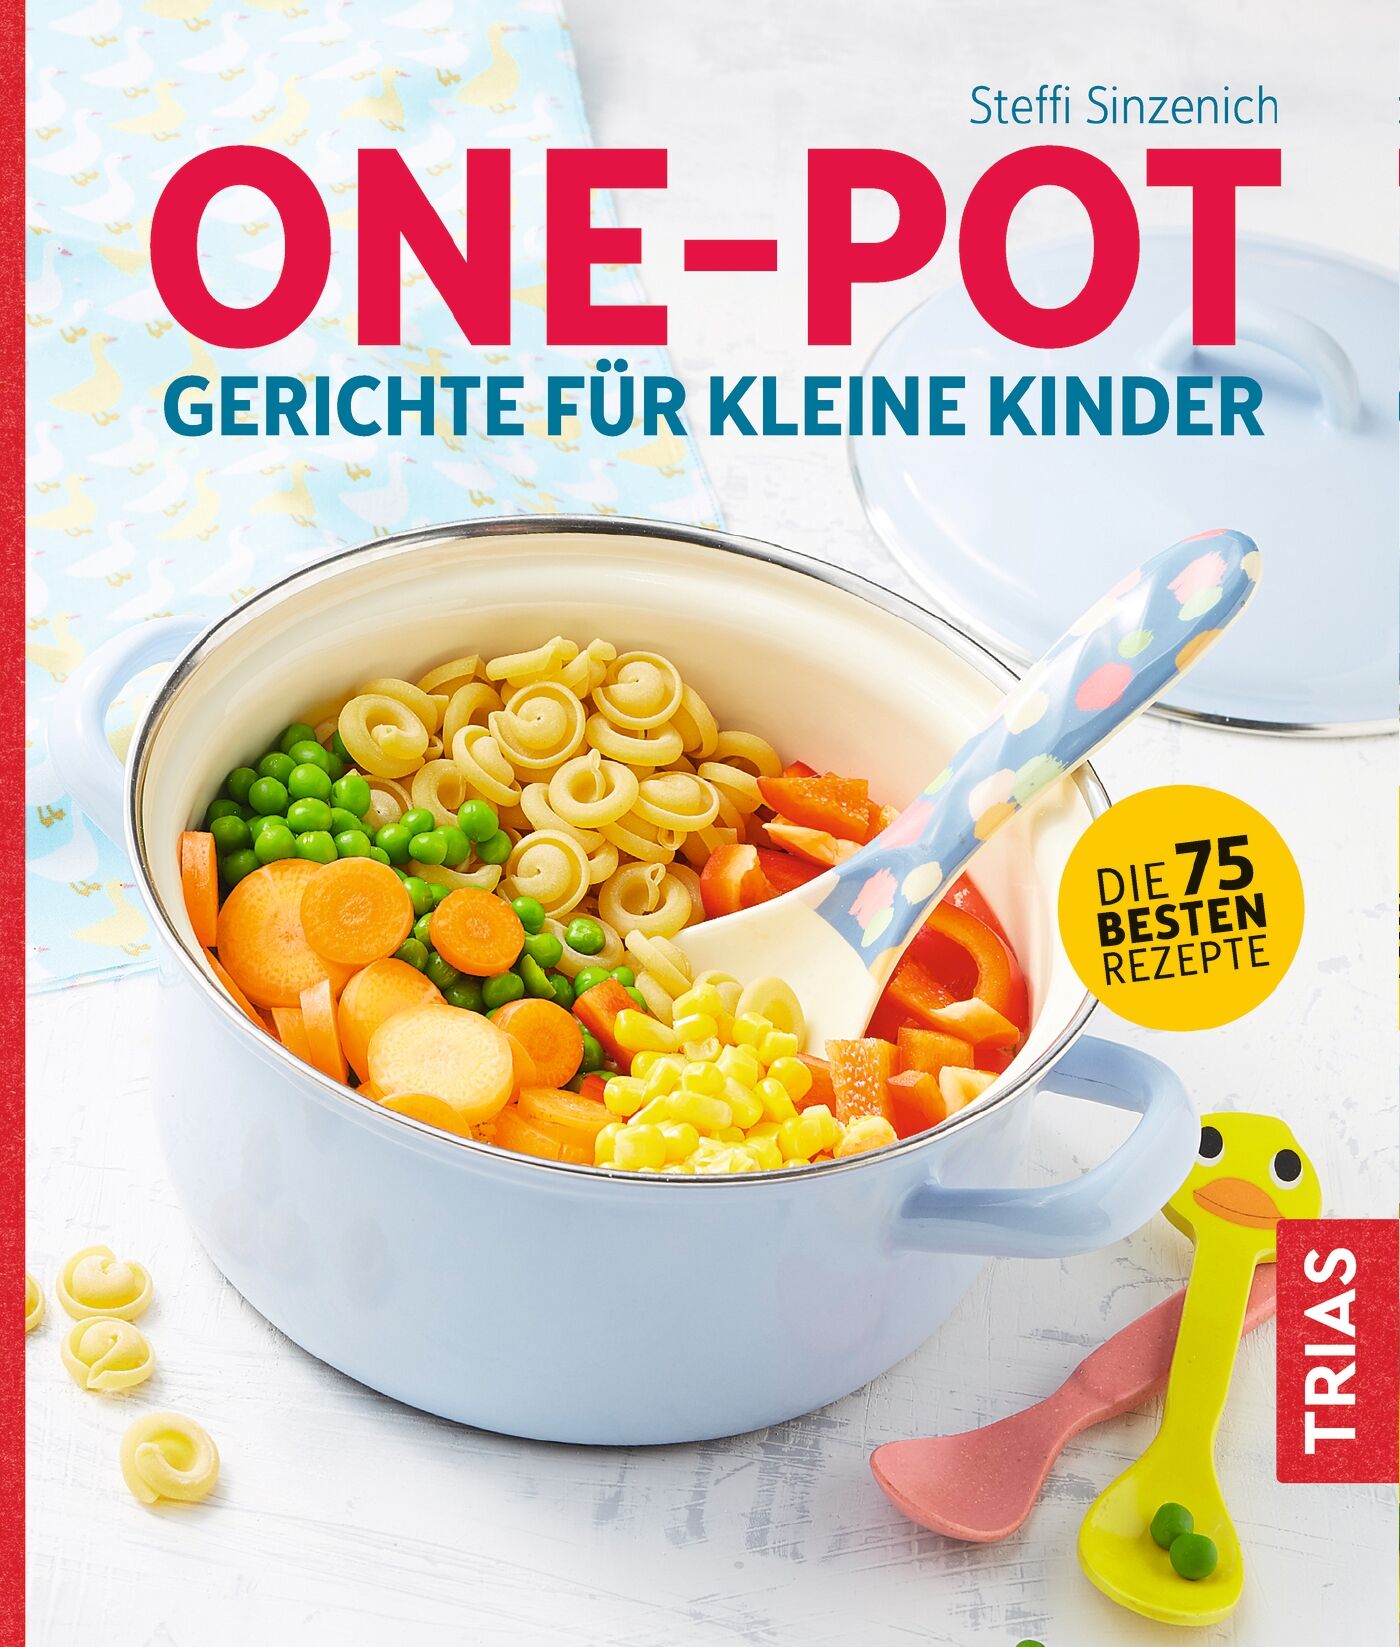 One-Pot - Gerichte für kleine Kinder, 9783432107783